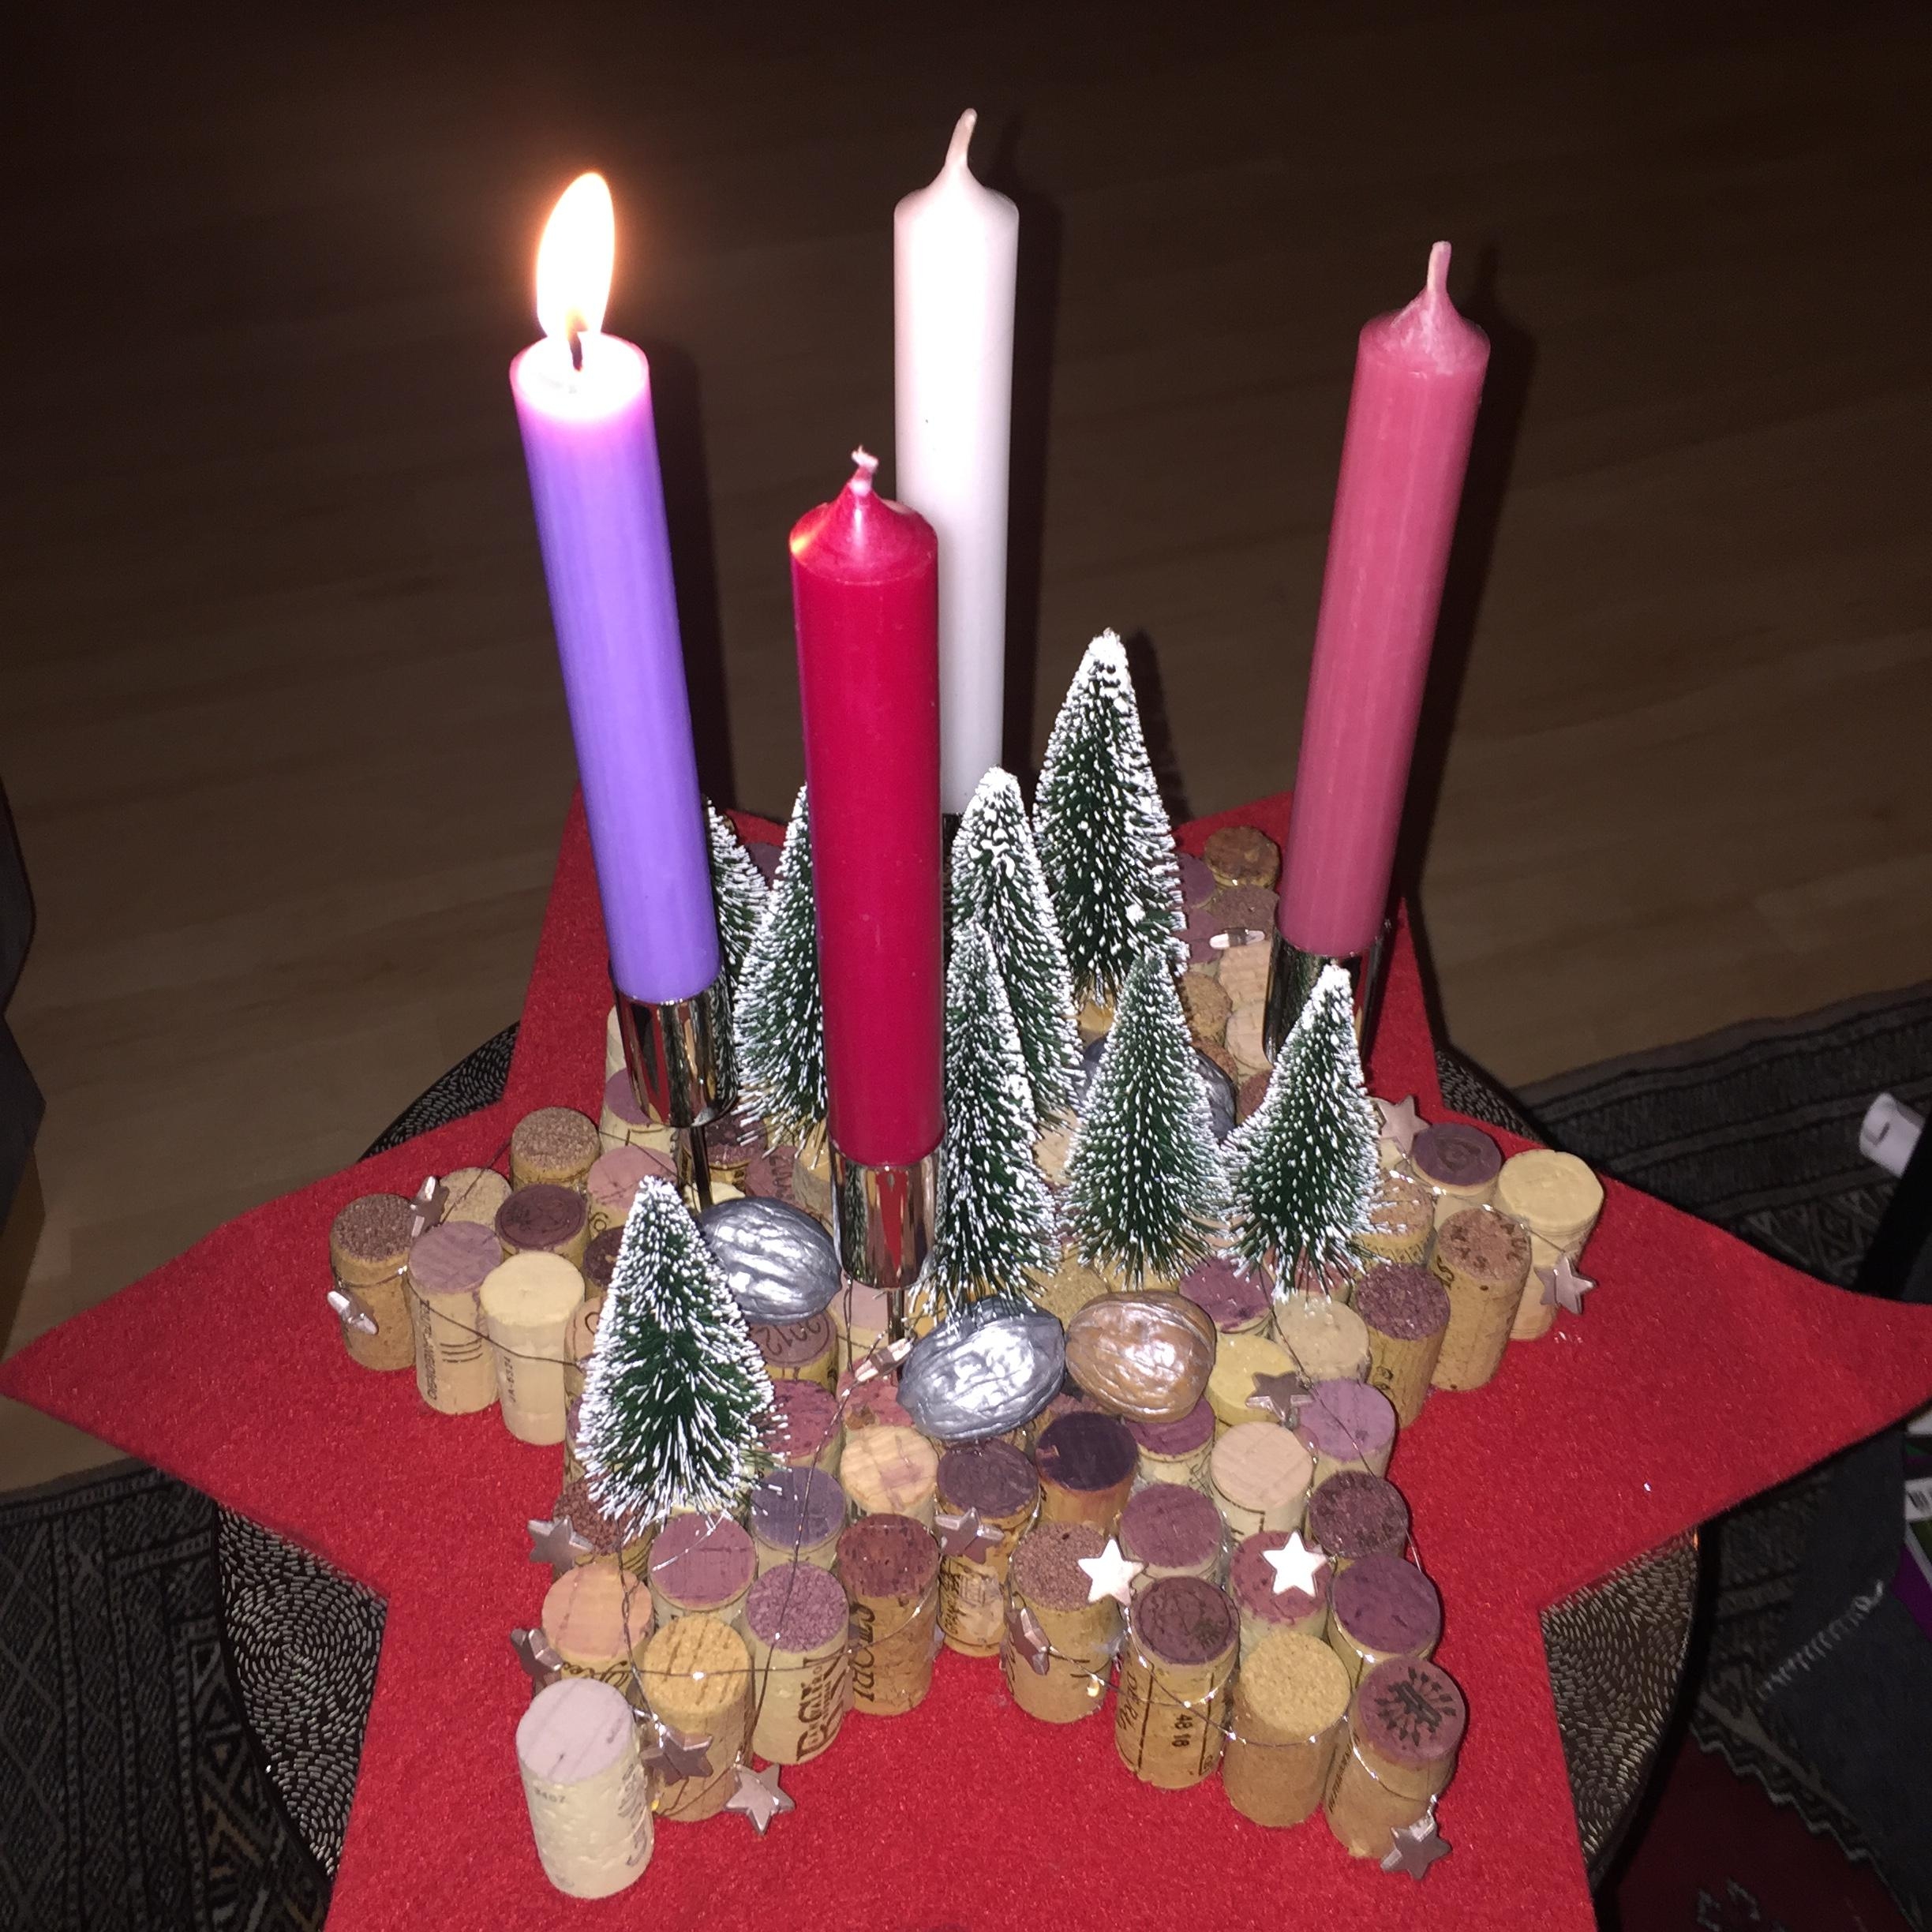 Adventskranz aus Weinkorken.
.
.
.
#DIY #neuhier #weihnachtsdekoration #livingroom #advent